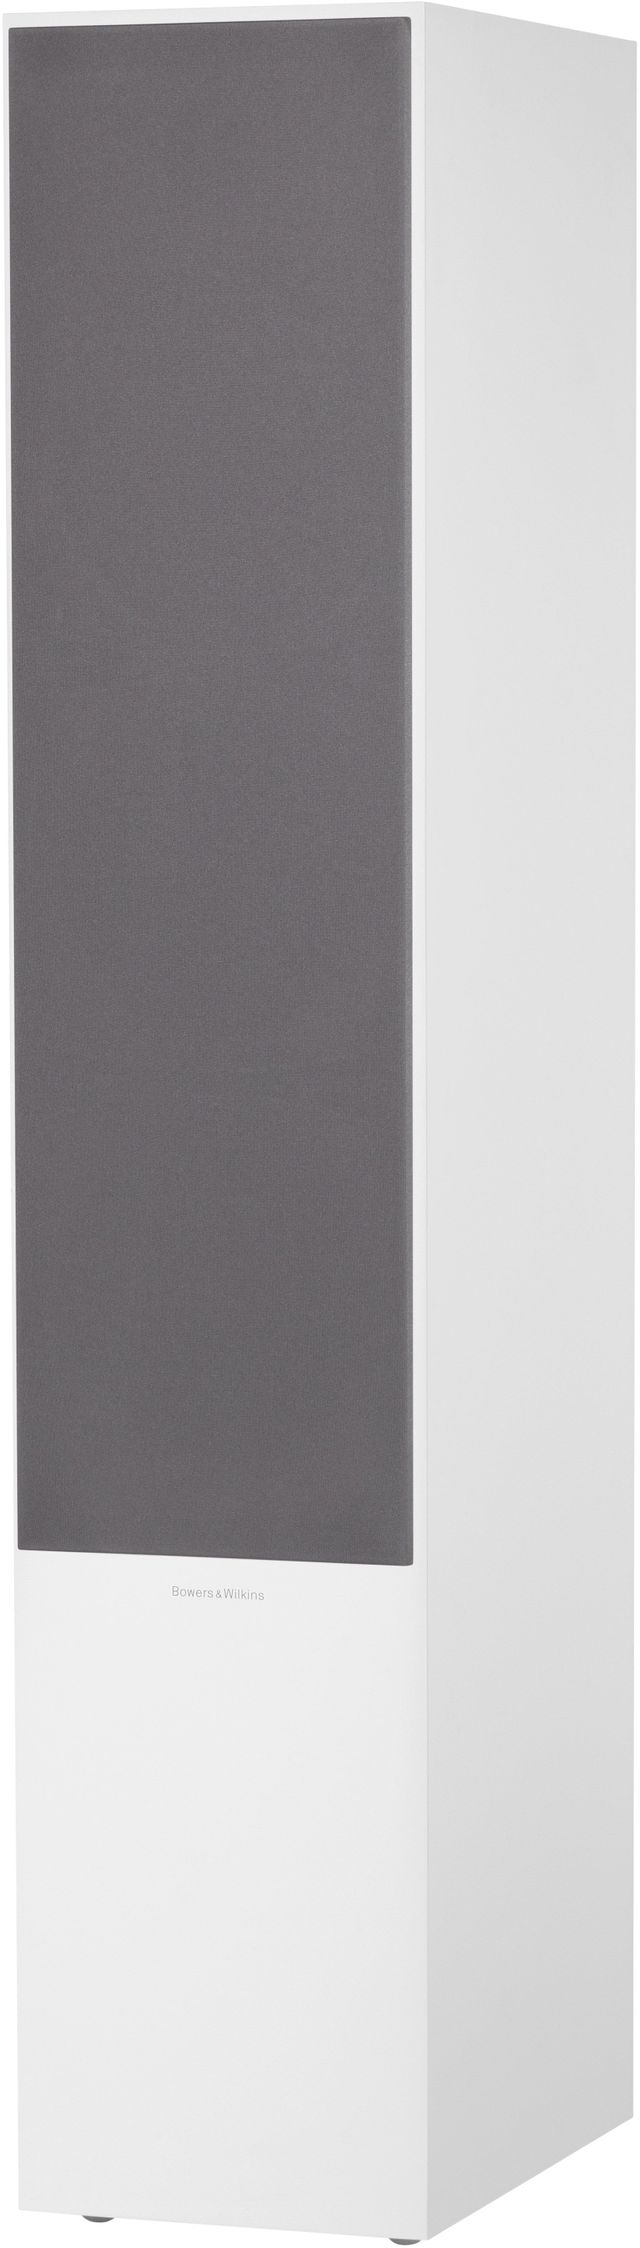 Bowers & Wilkins Satin White 703 S2 Floorstanding Speaker 1